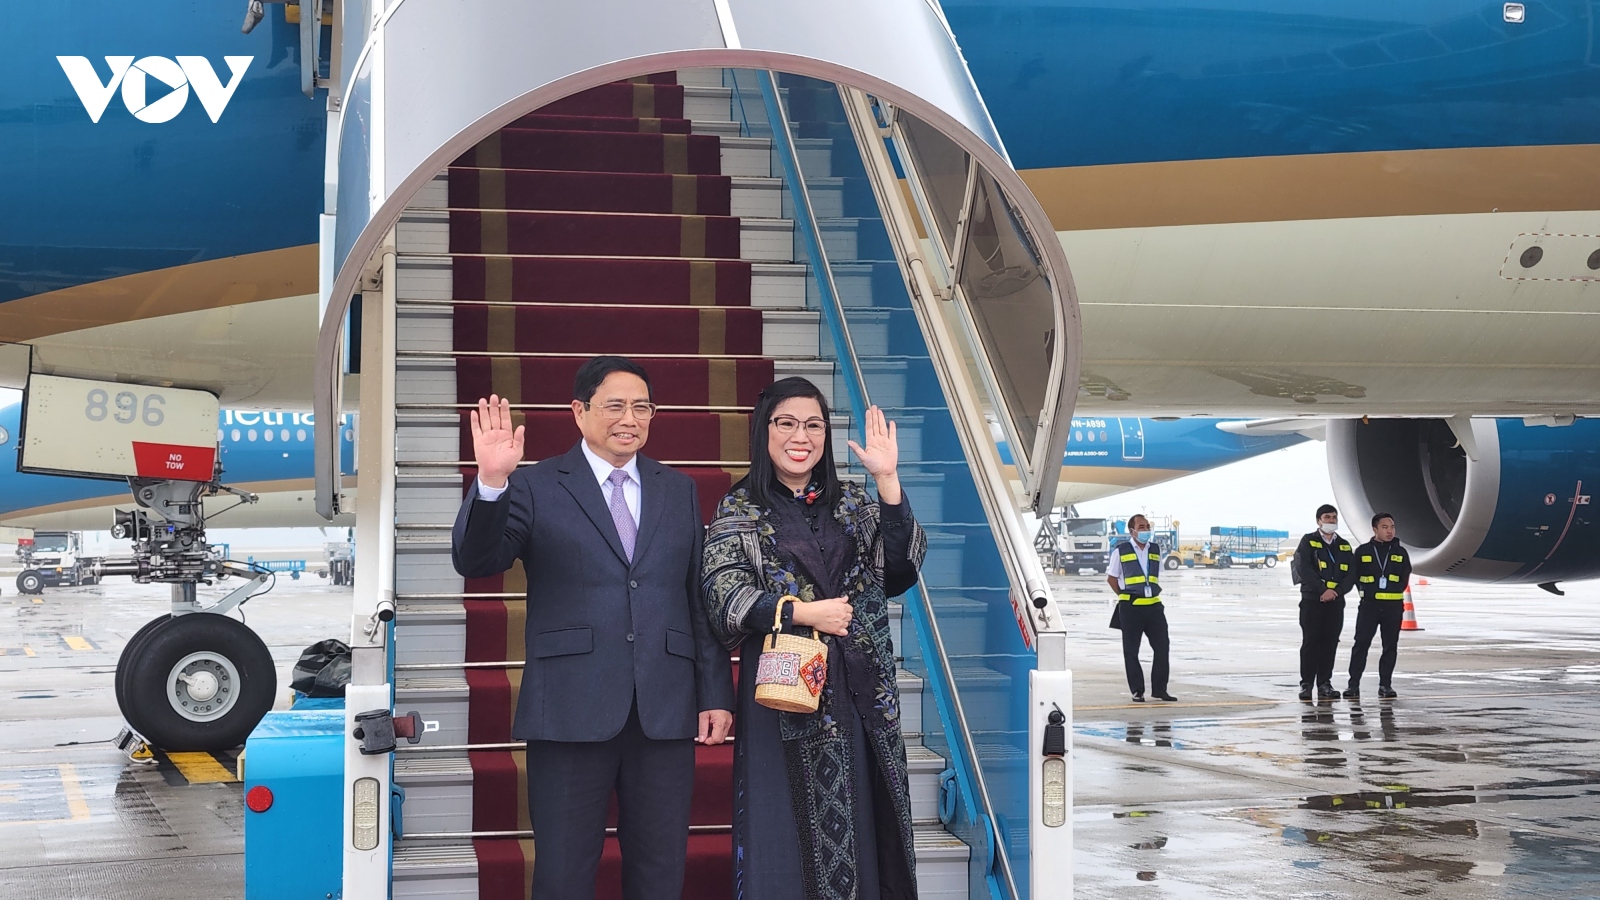 Thủ tướng và phu nhân lên đường thăm chính thức Singapore và Brunei